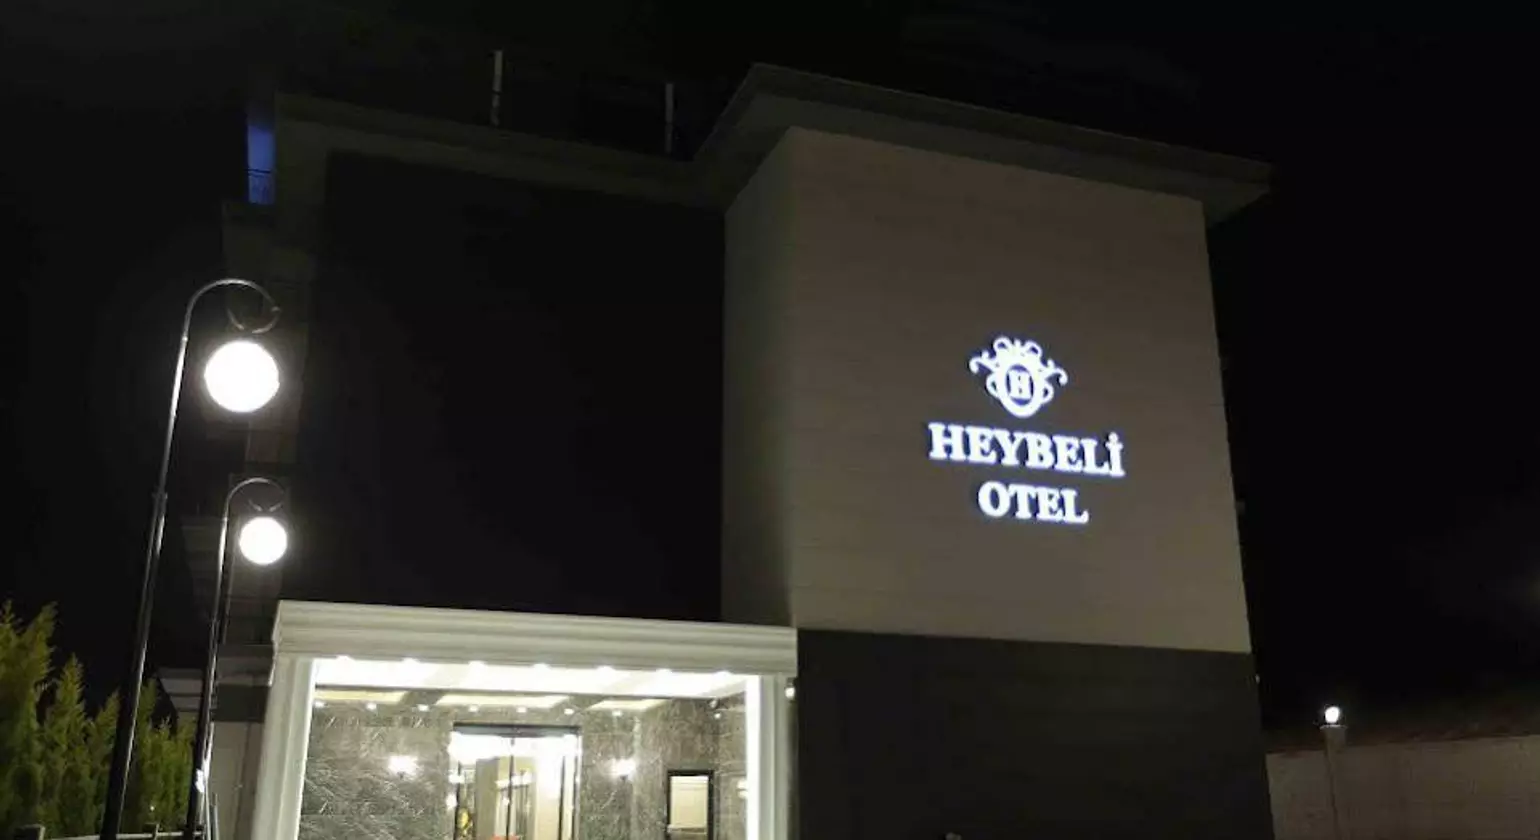 Heybeli Otel